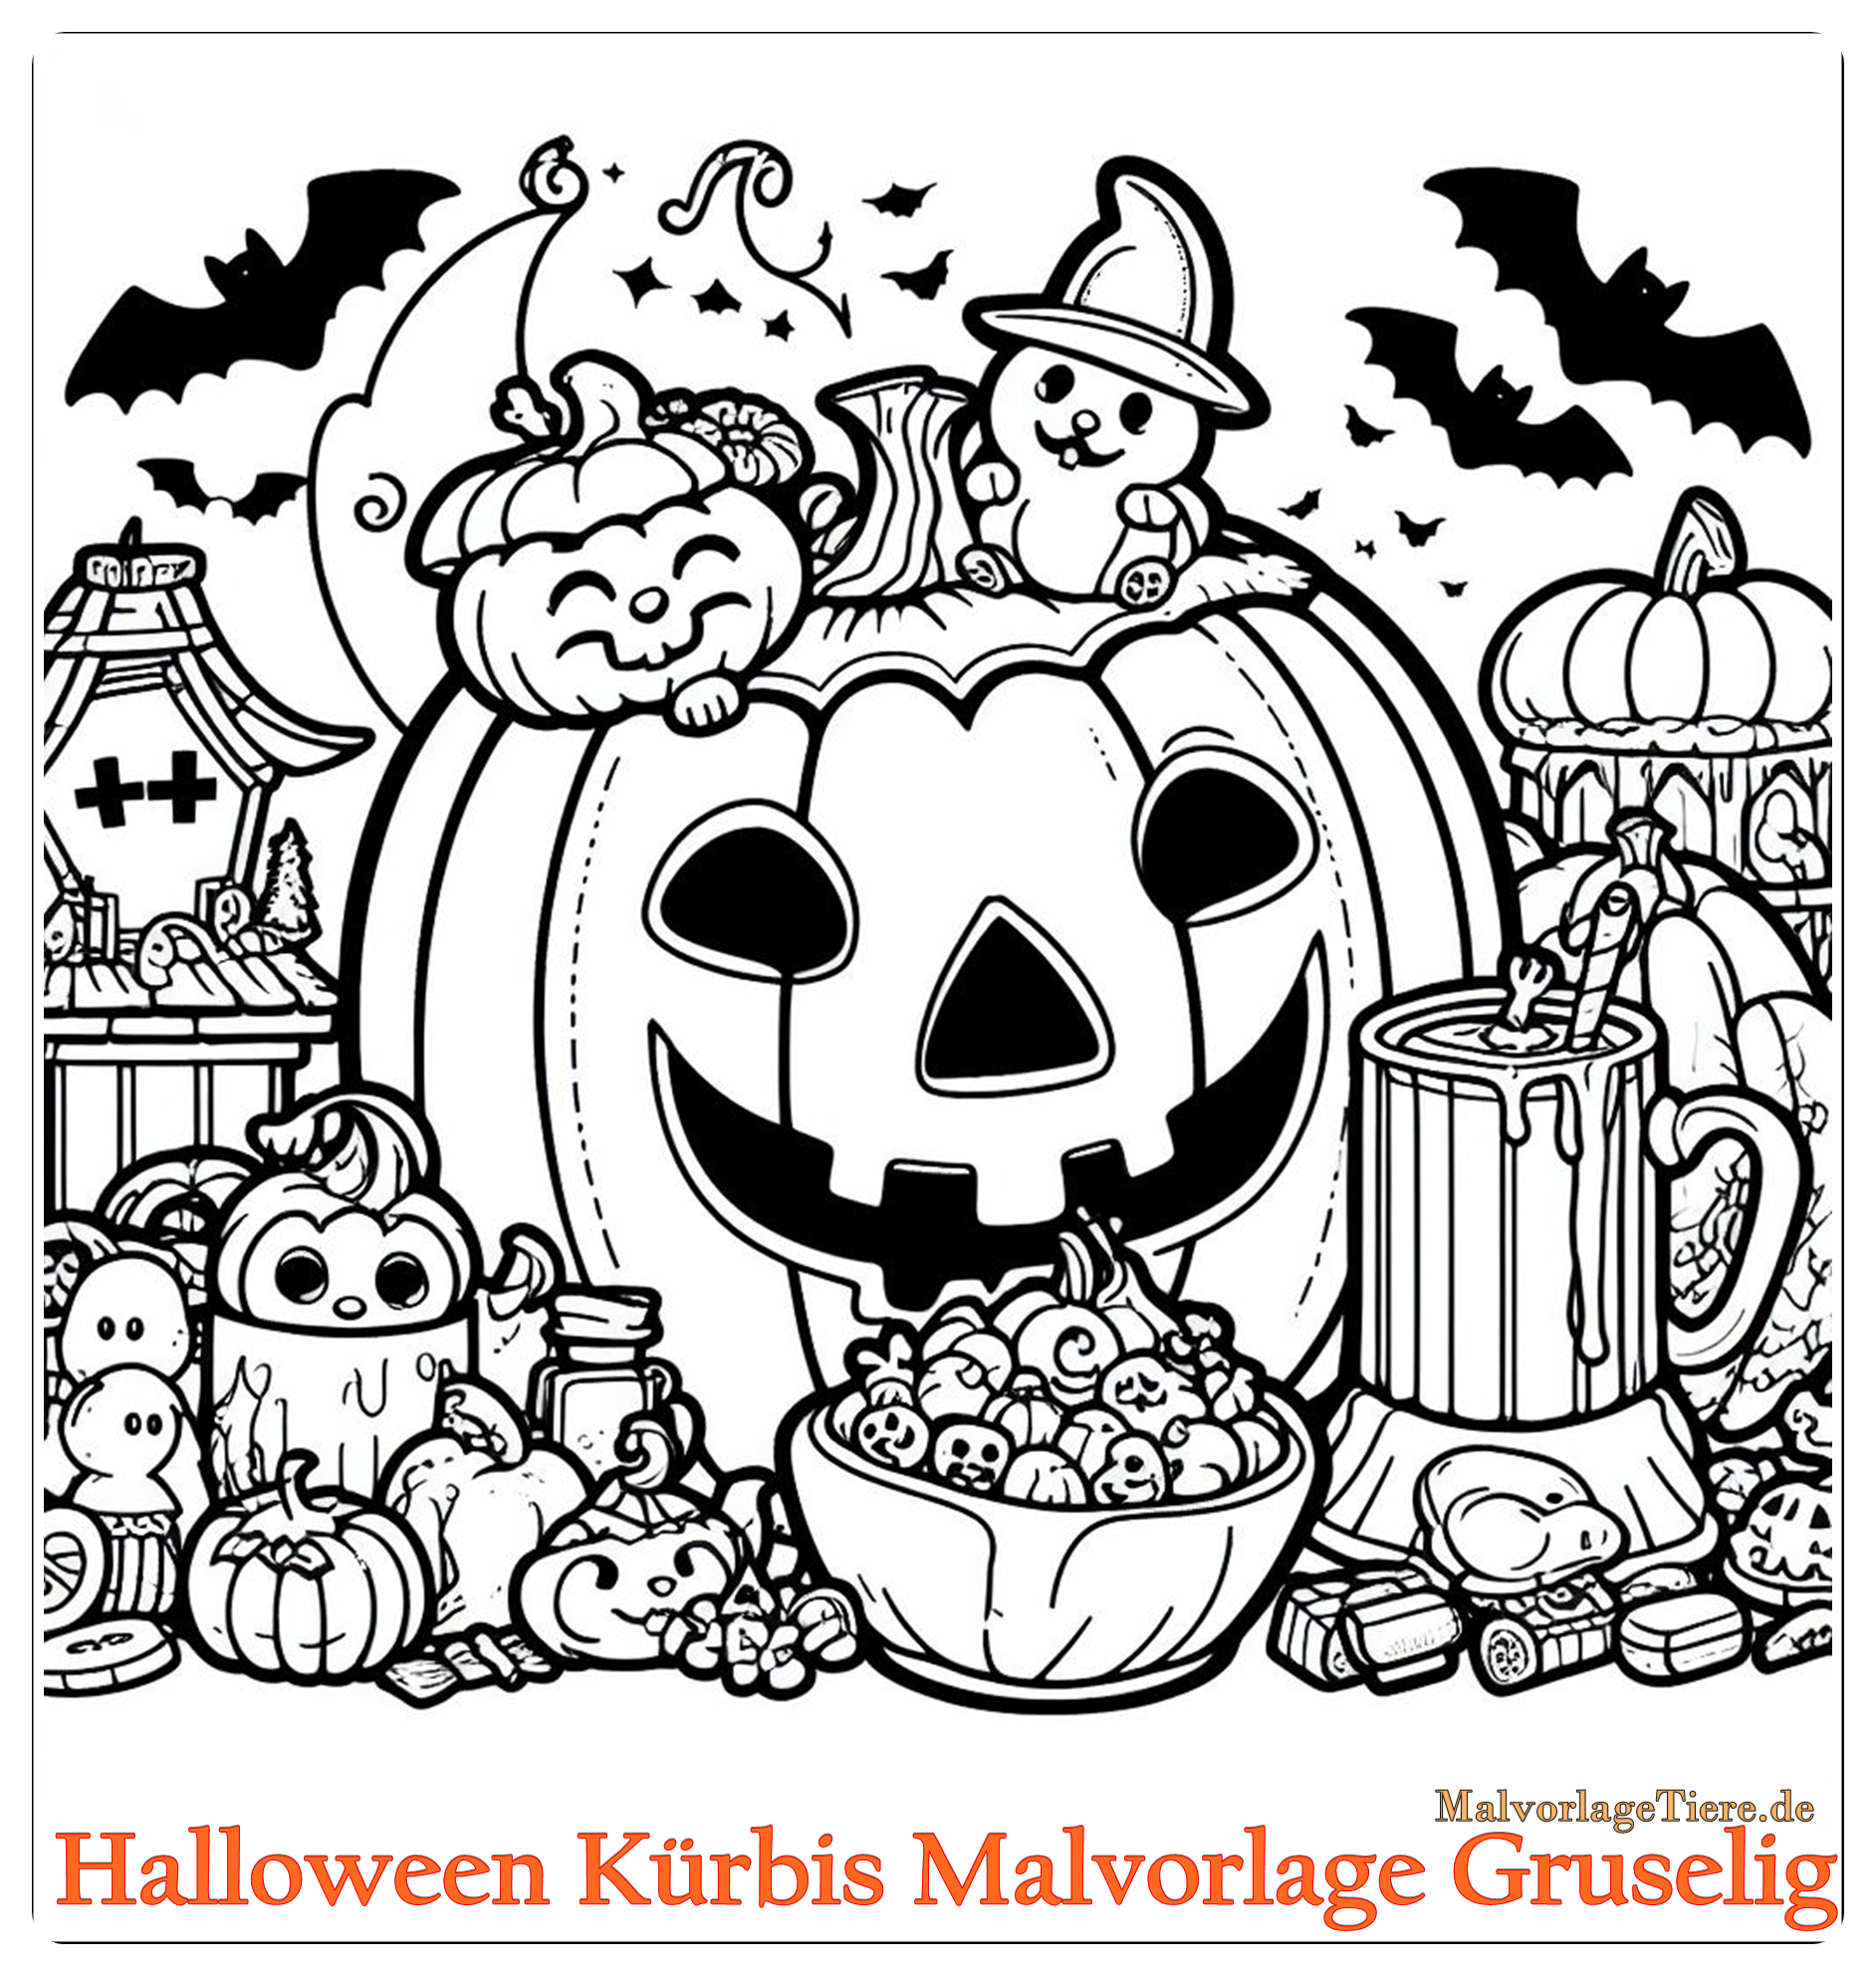 Halloween Kürbis Malvorlage Gruselig 03 by malvorlagetiere.de